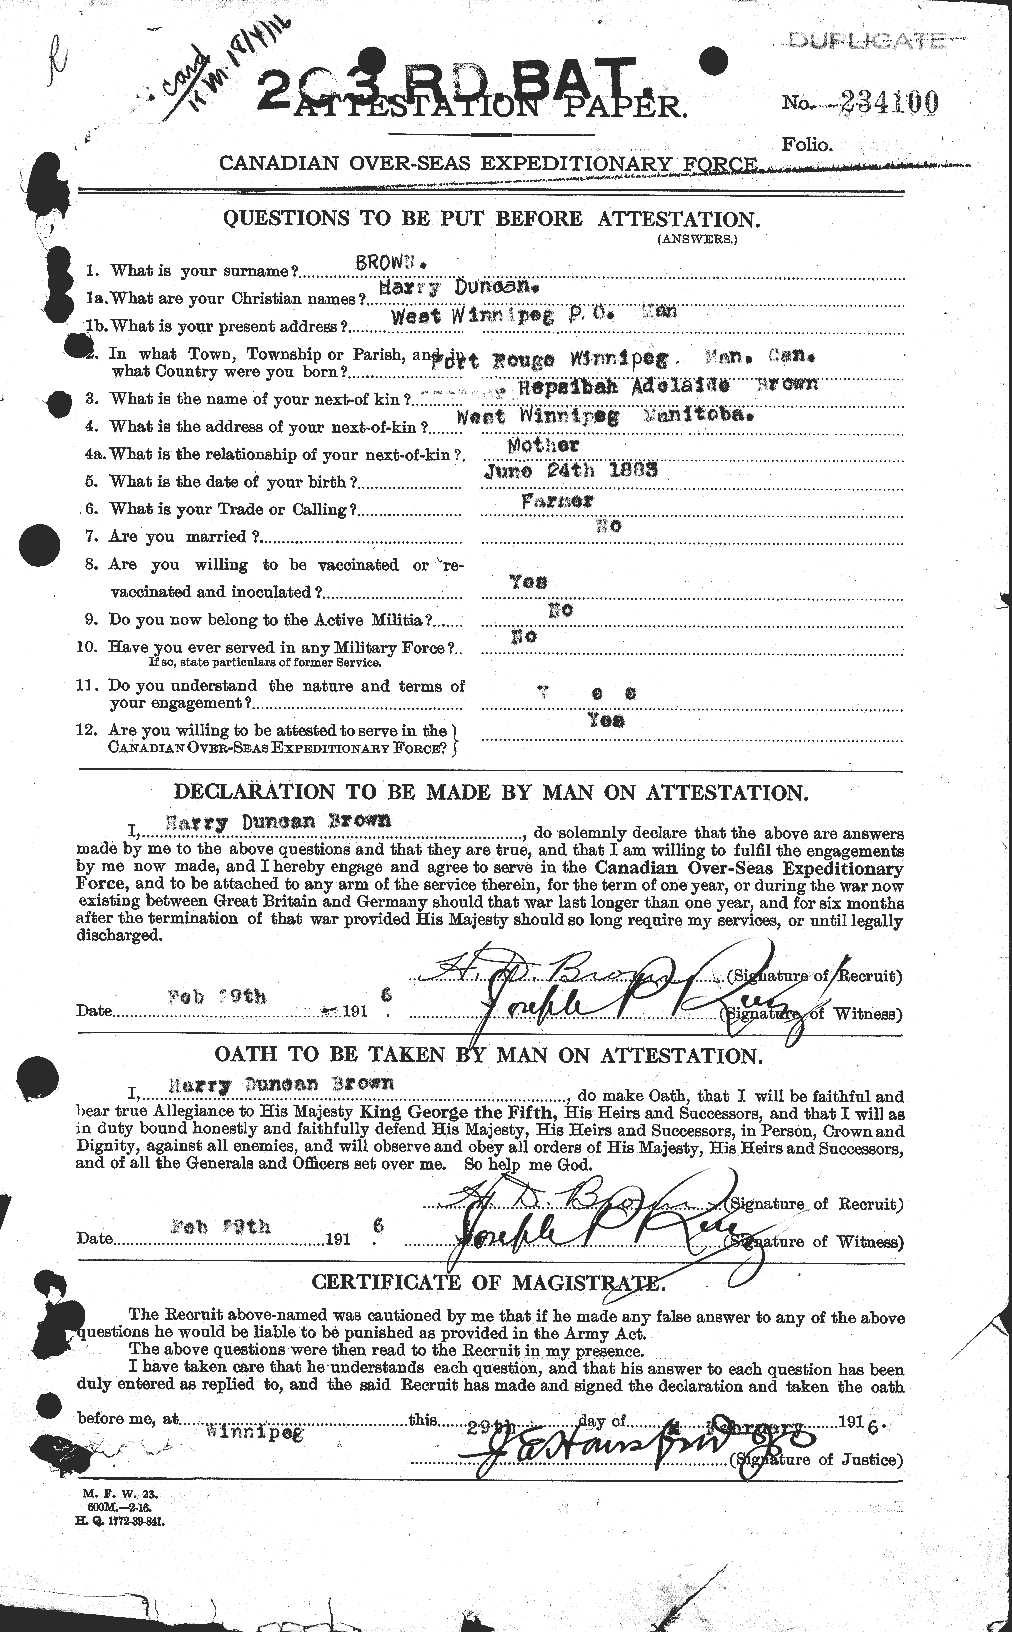 Dossiers du Personnel de la Première Guerre mondiale - CEC 265451a